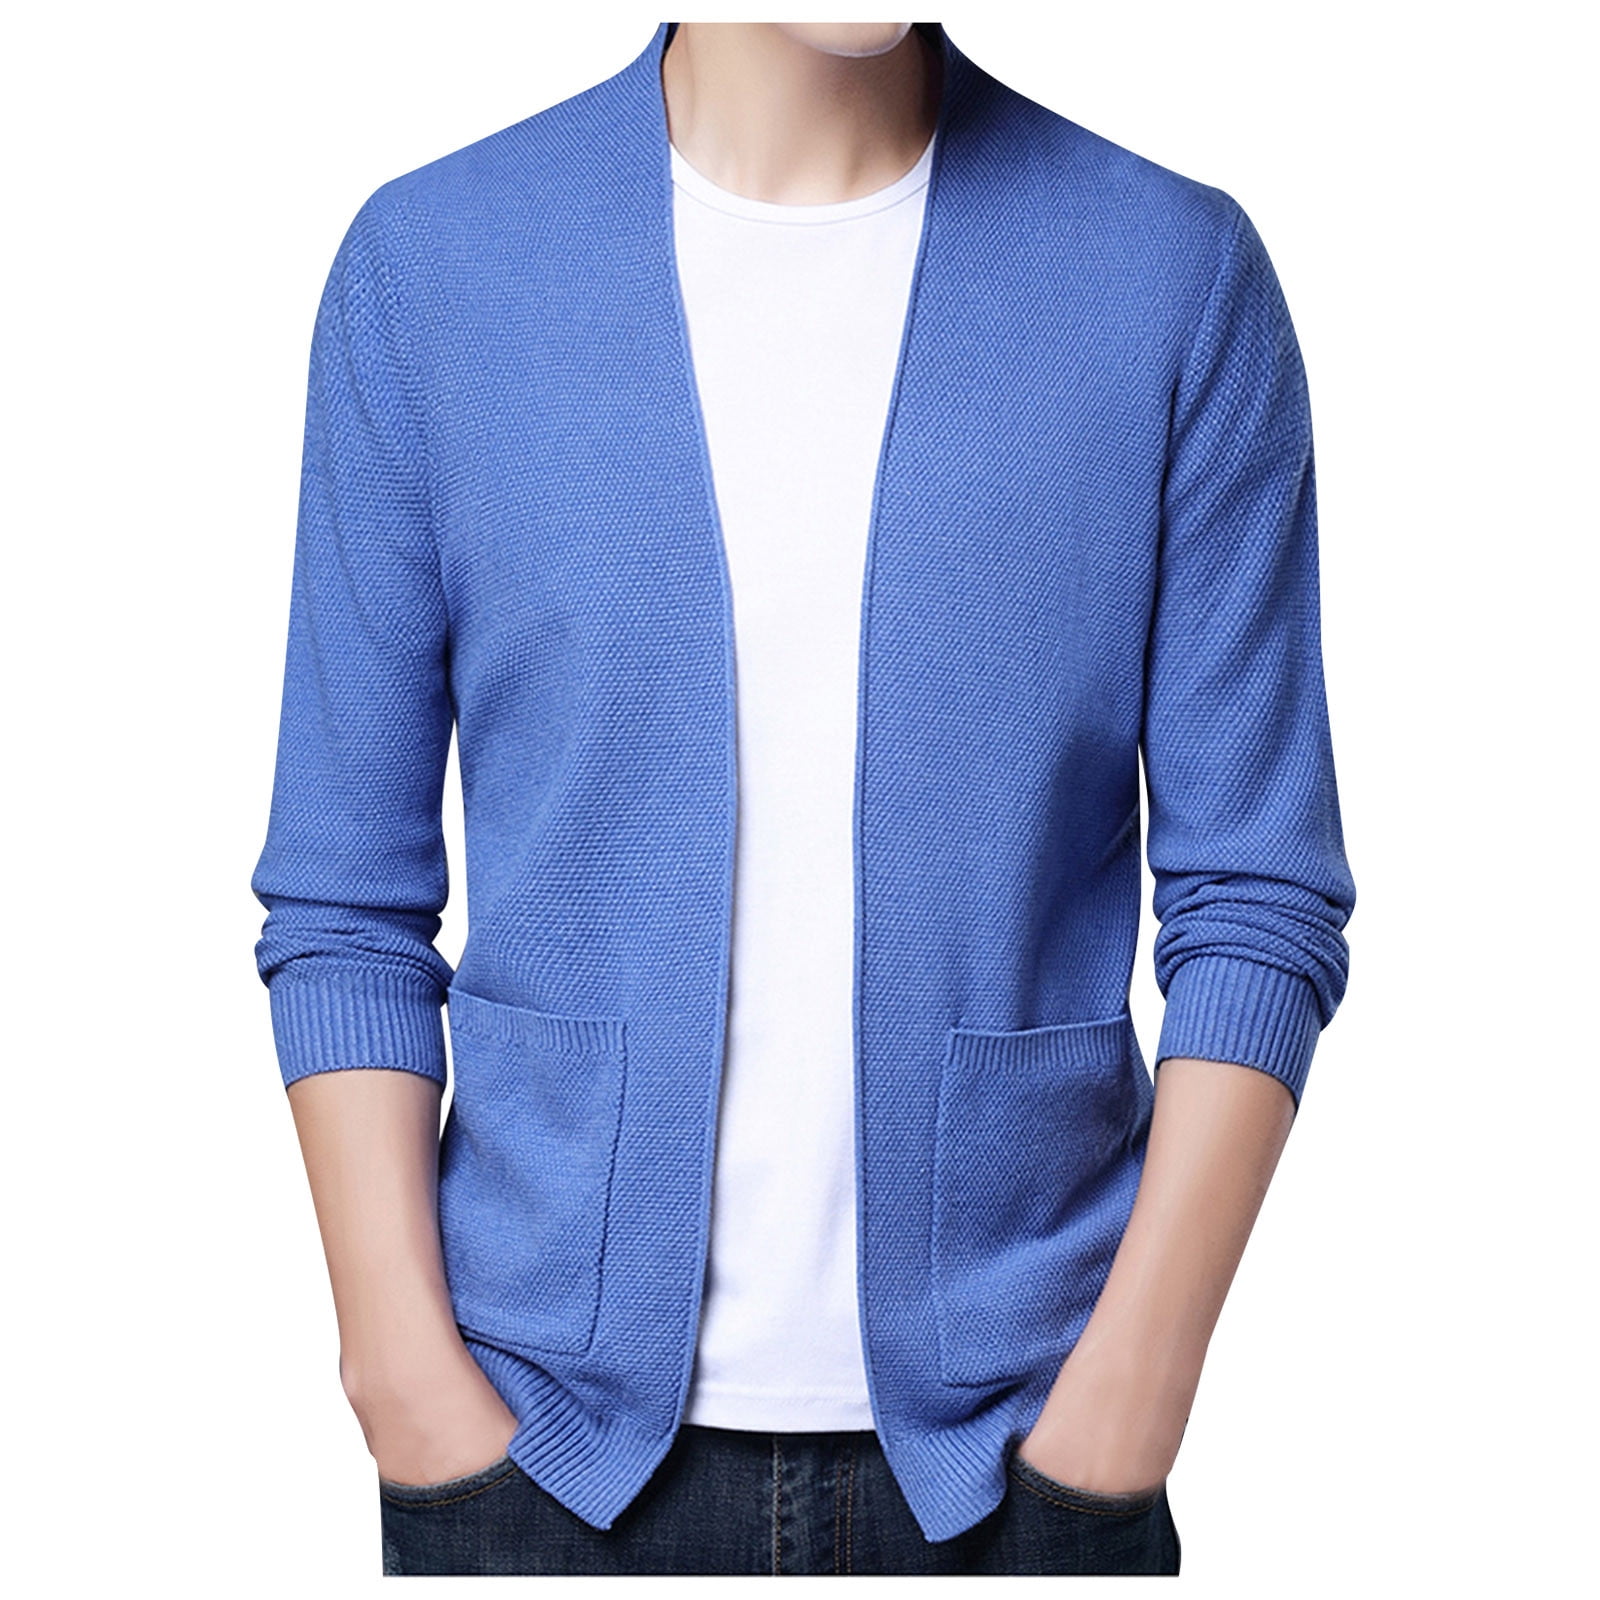 Super Stylish Jacket Blouse Design Patterns | jacket blouse designs images  | Latest Designer Blouses - YouTube